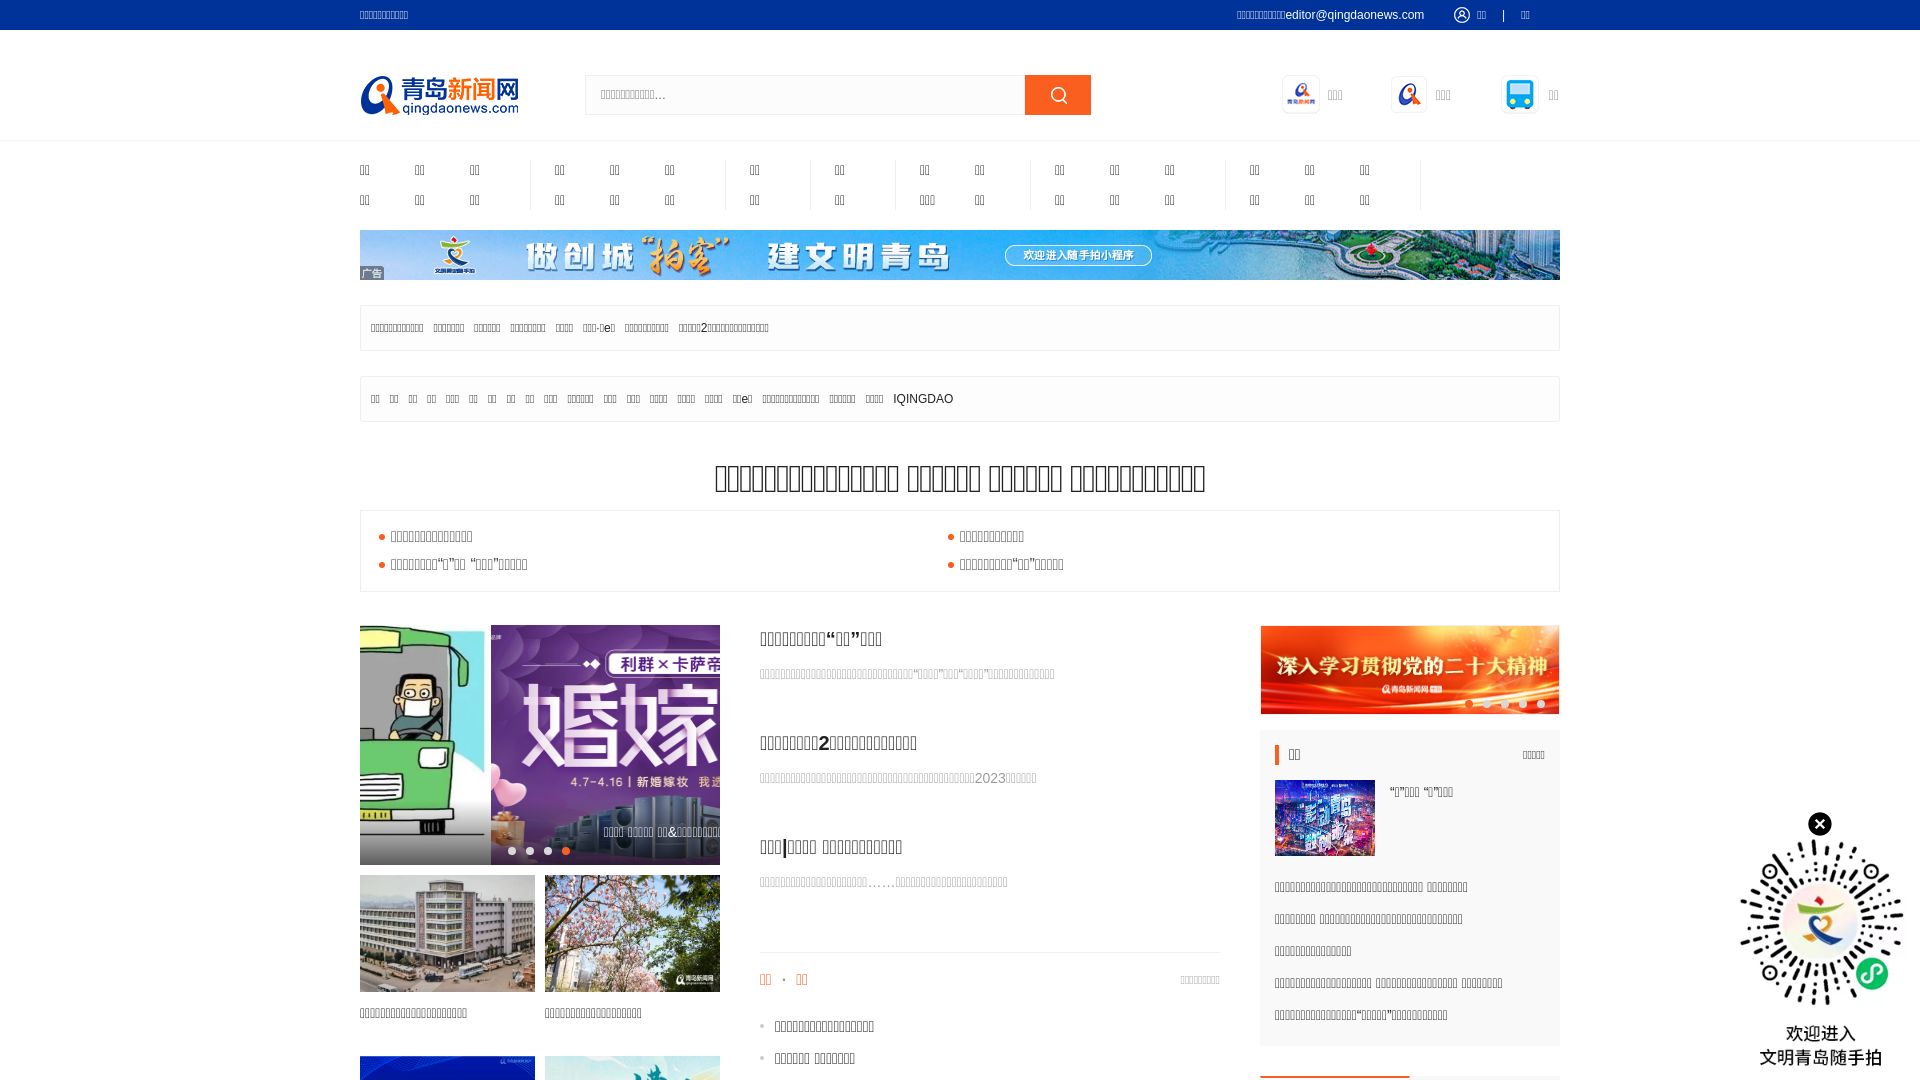 Stato del sito web qingdaonews.com è   ONLINE